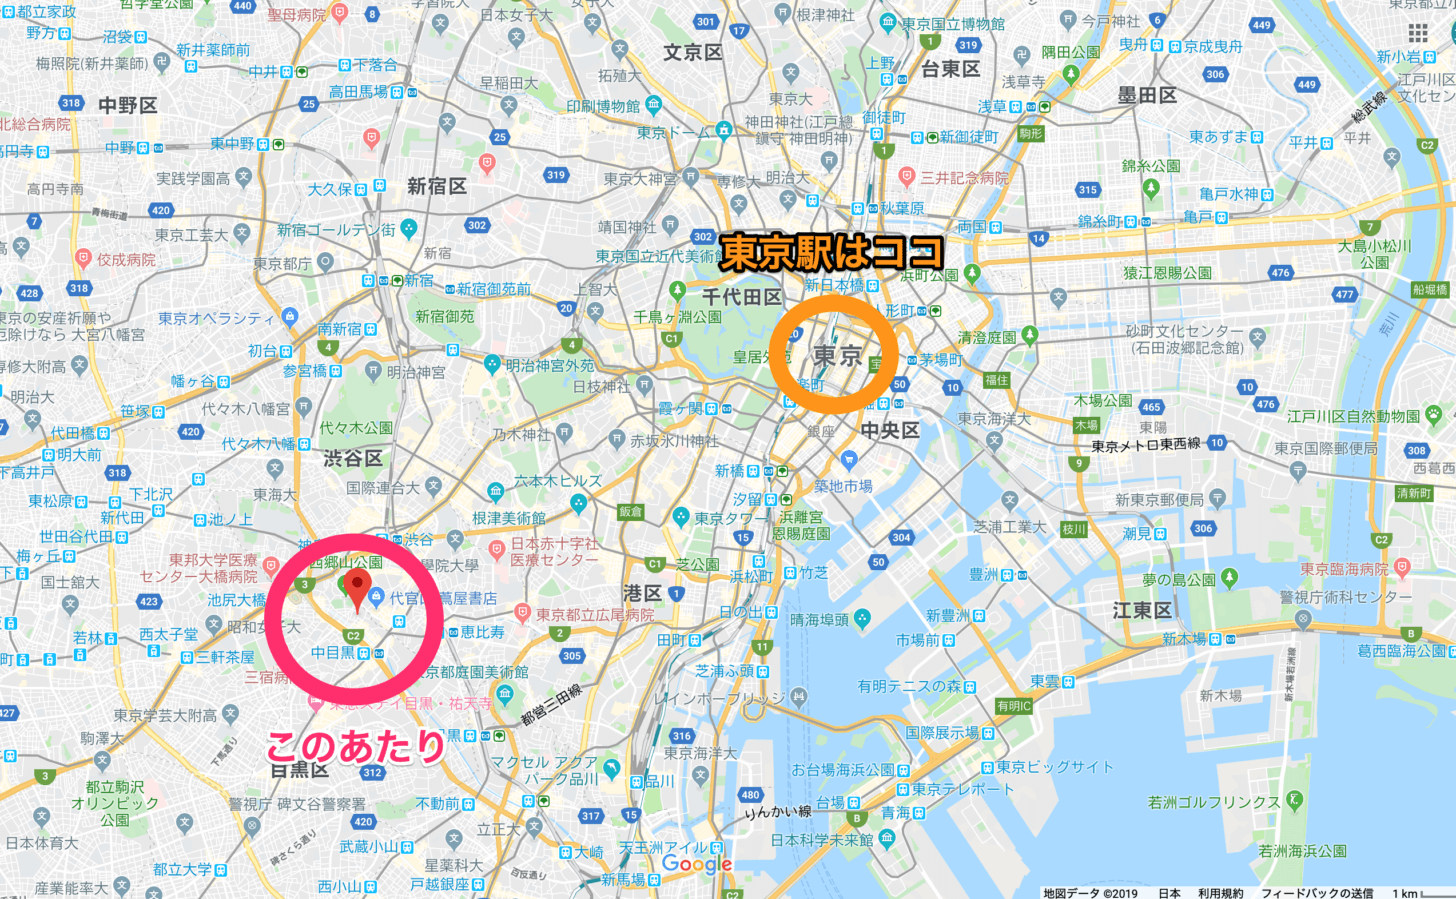 東京における中目黒と代官山の位置関係